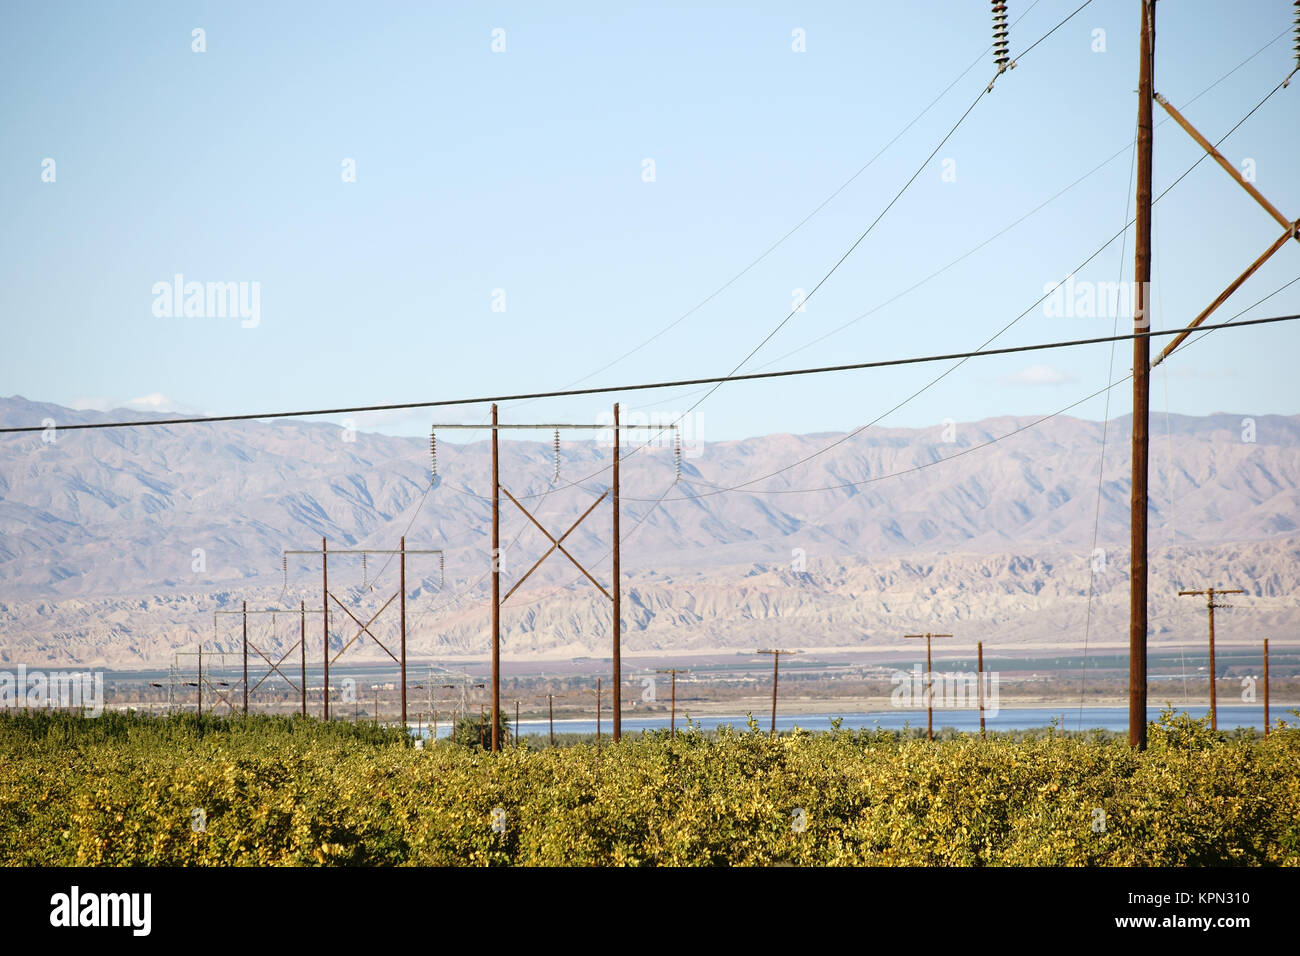 Eine Obstplantage am Saltonsee mit Stromversorgung und Bergen im Hintergrund. Stock Photo